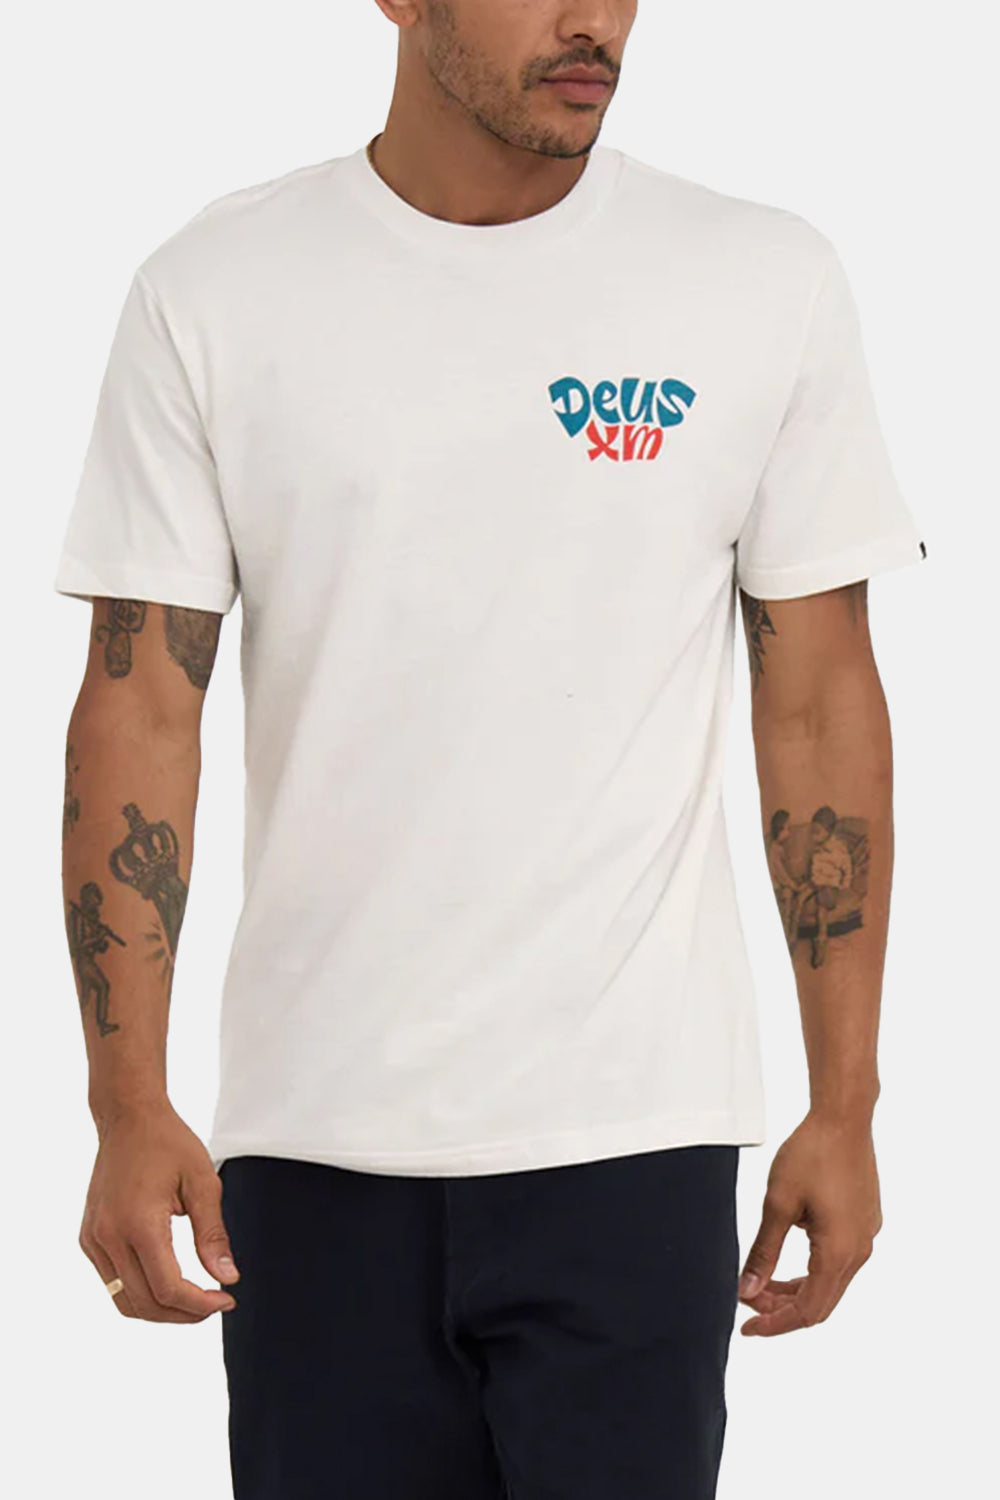 Deus Tables T-shirt (Vintage White)